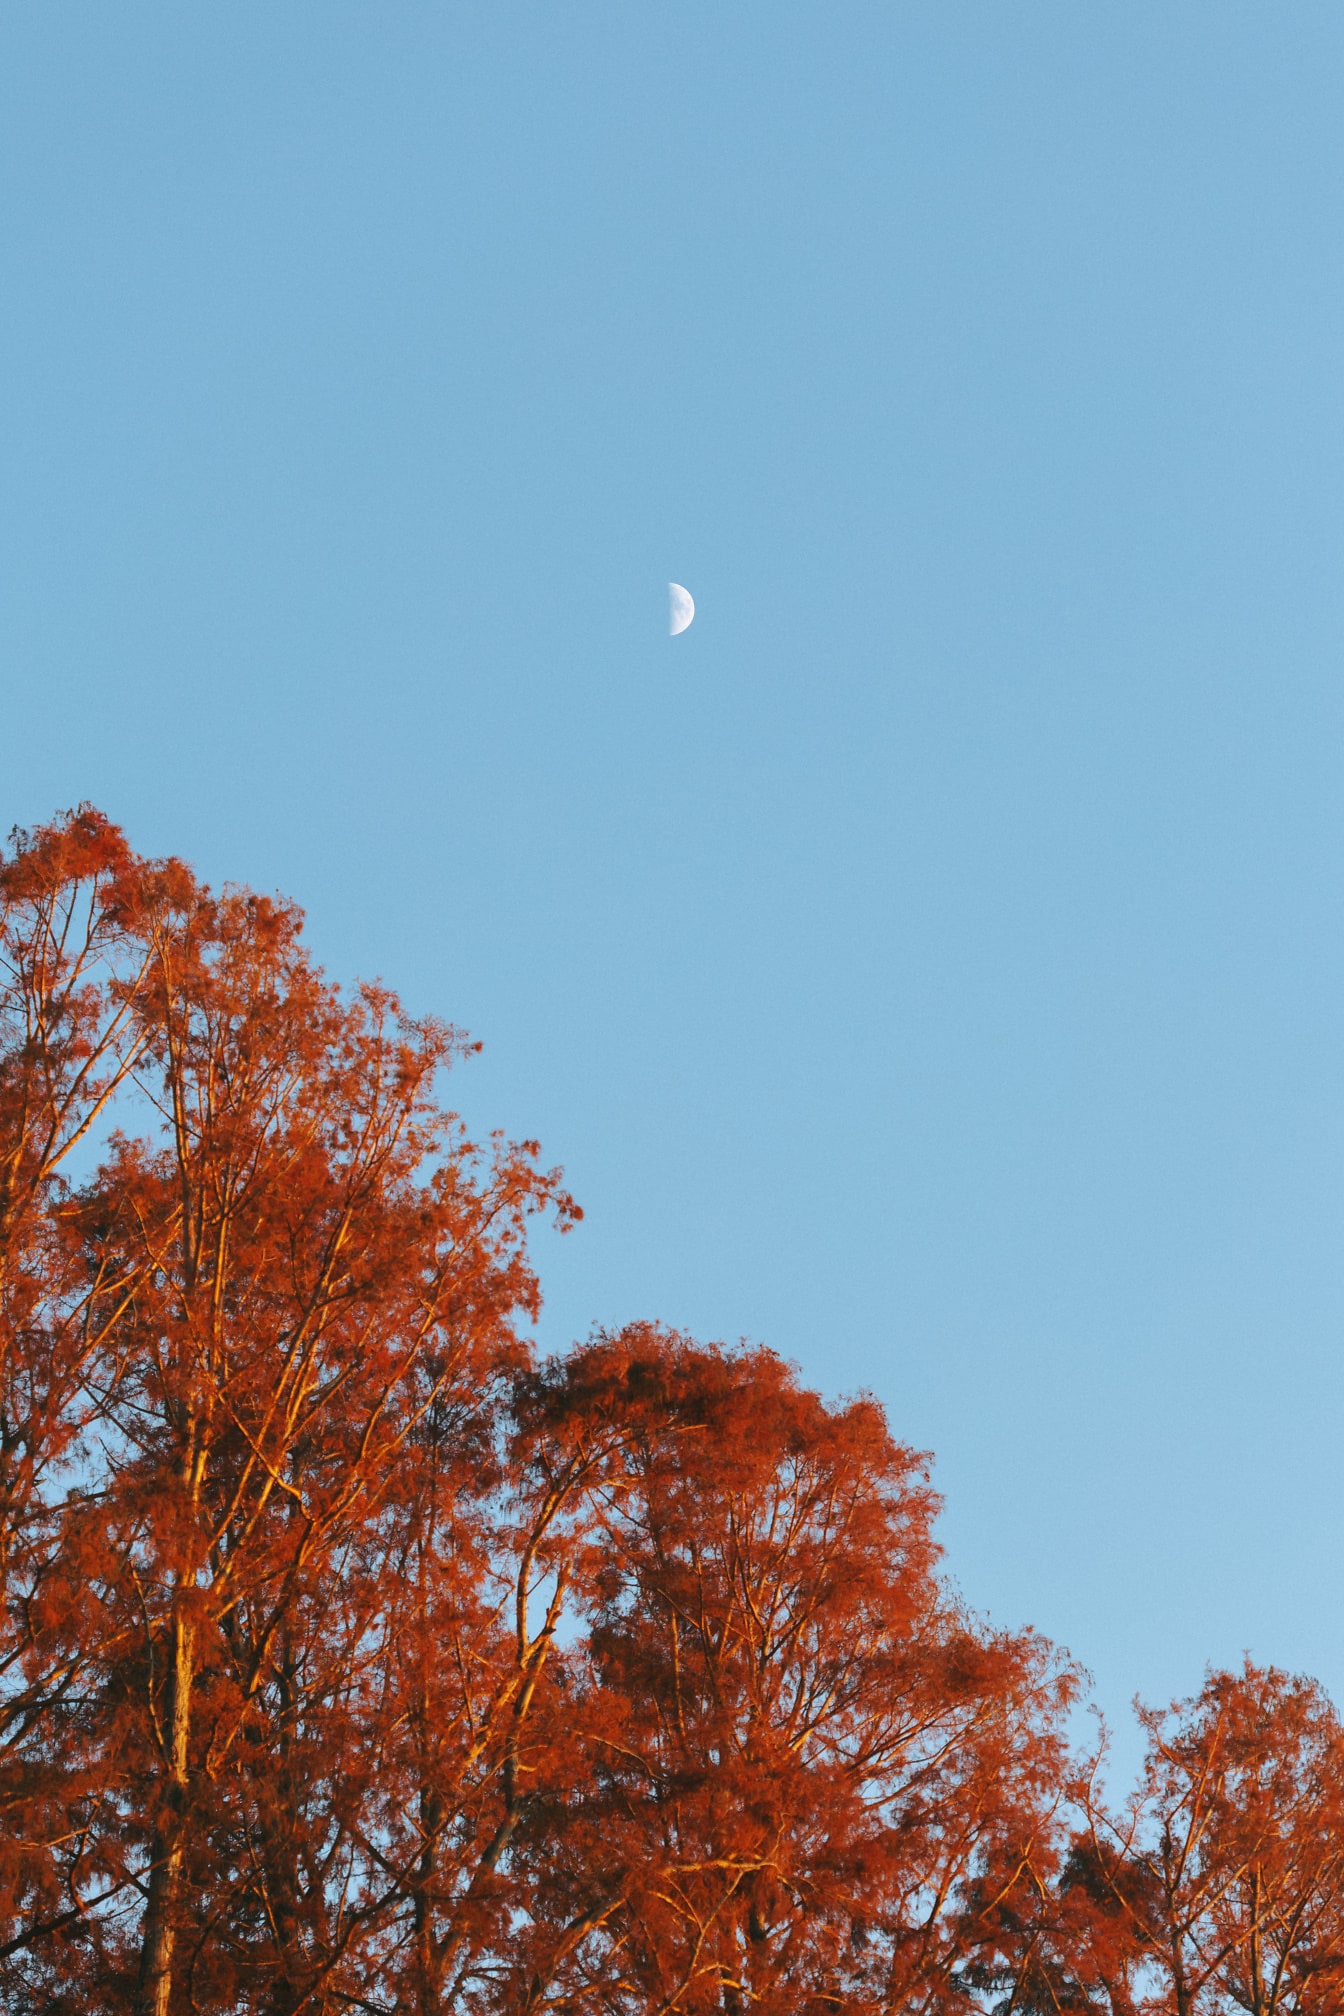 Πορτοκαλί κίτρινα φύλλα σε δέντρα με φωτεινό μπλε ουρανό με έκλειψη Σελήνης